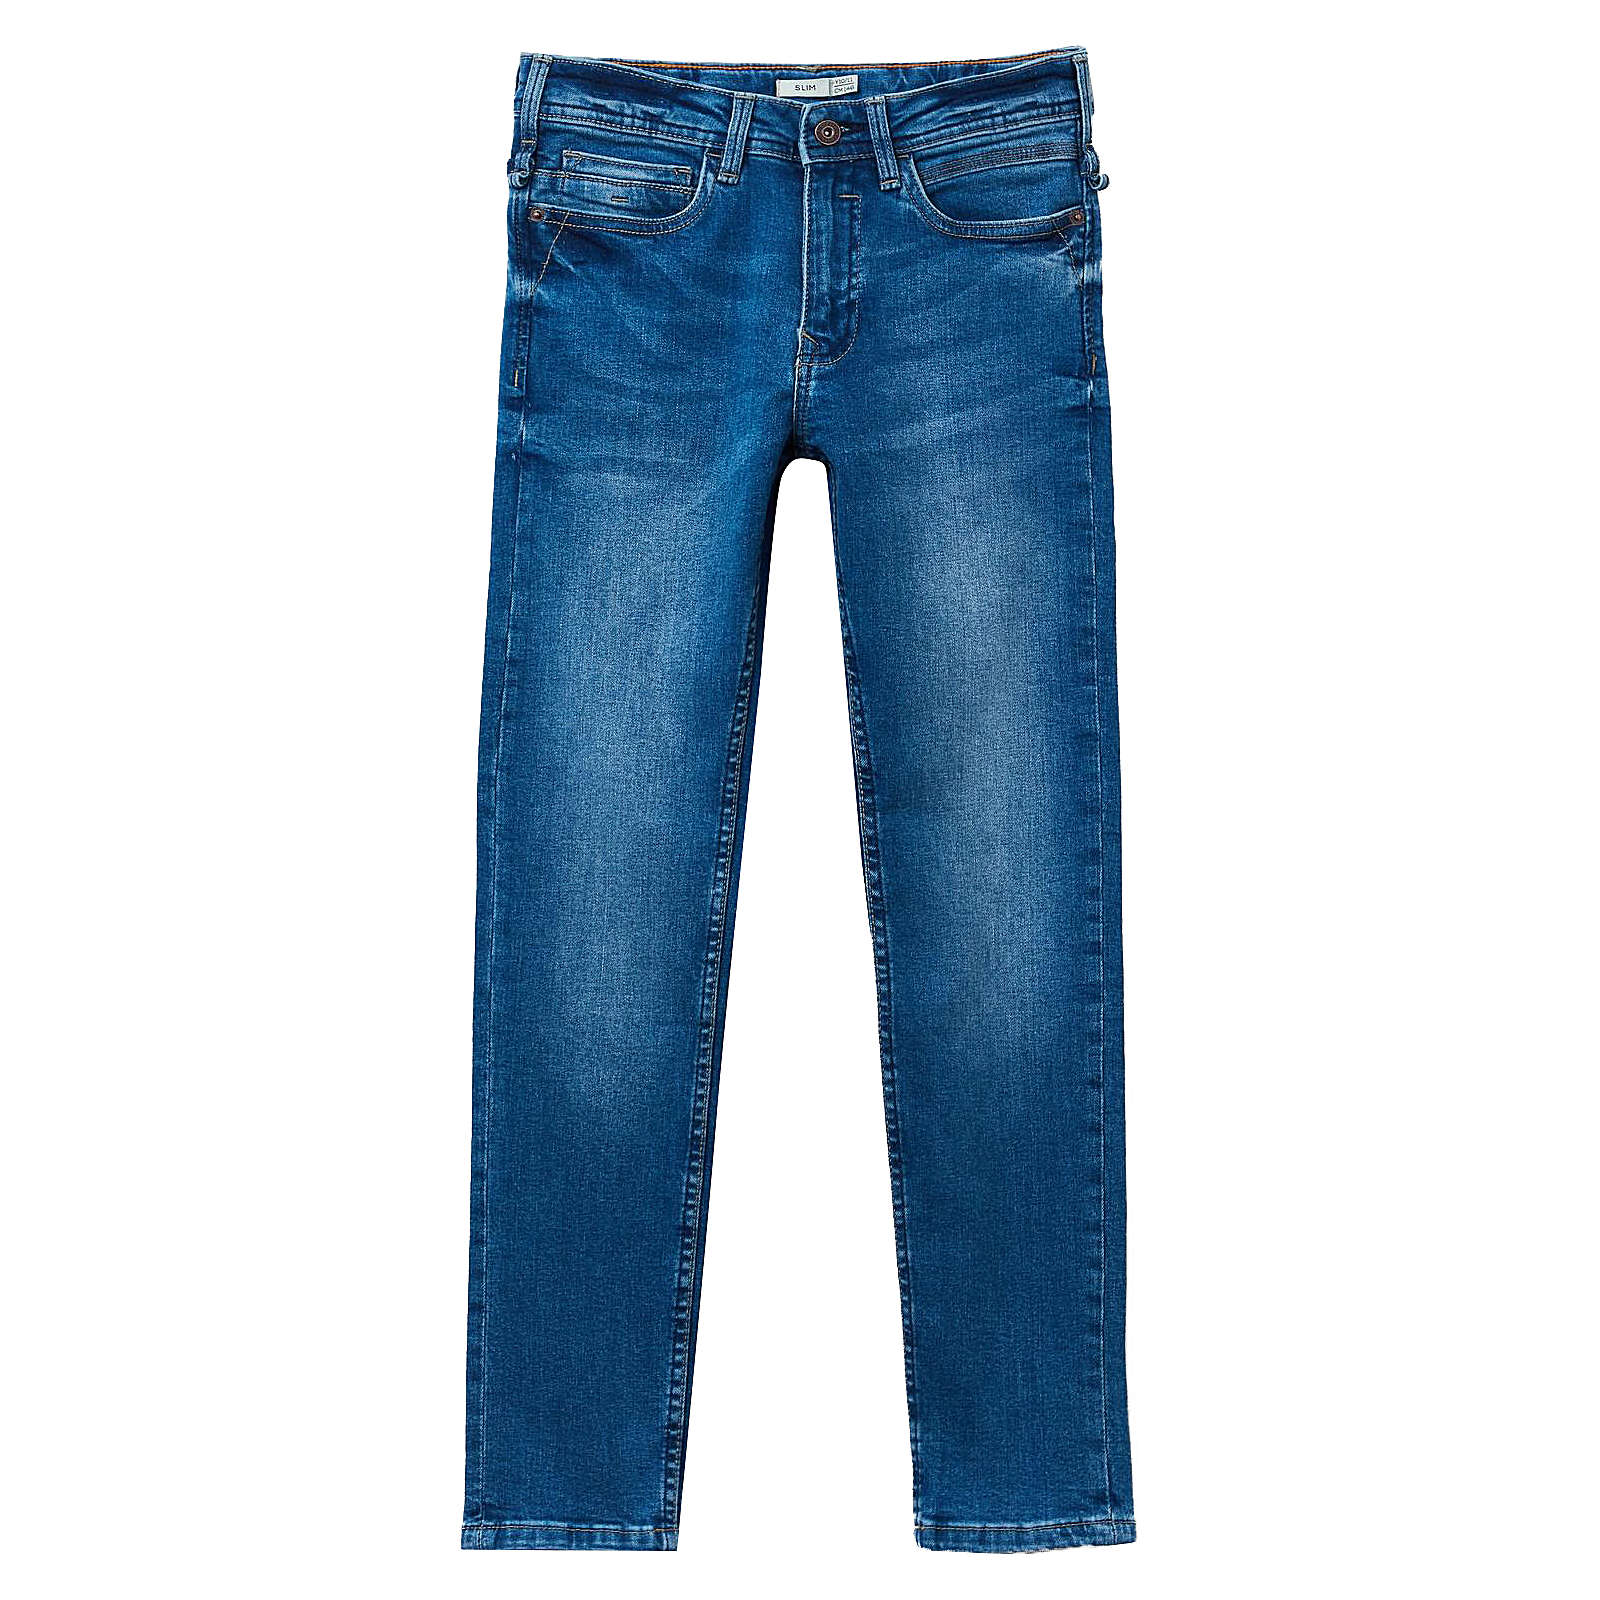 OVS Jeanshose für Mädchen blau Junge Gr. 170